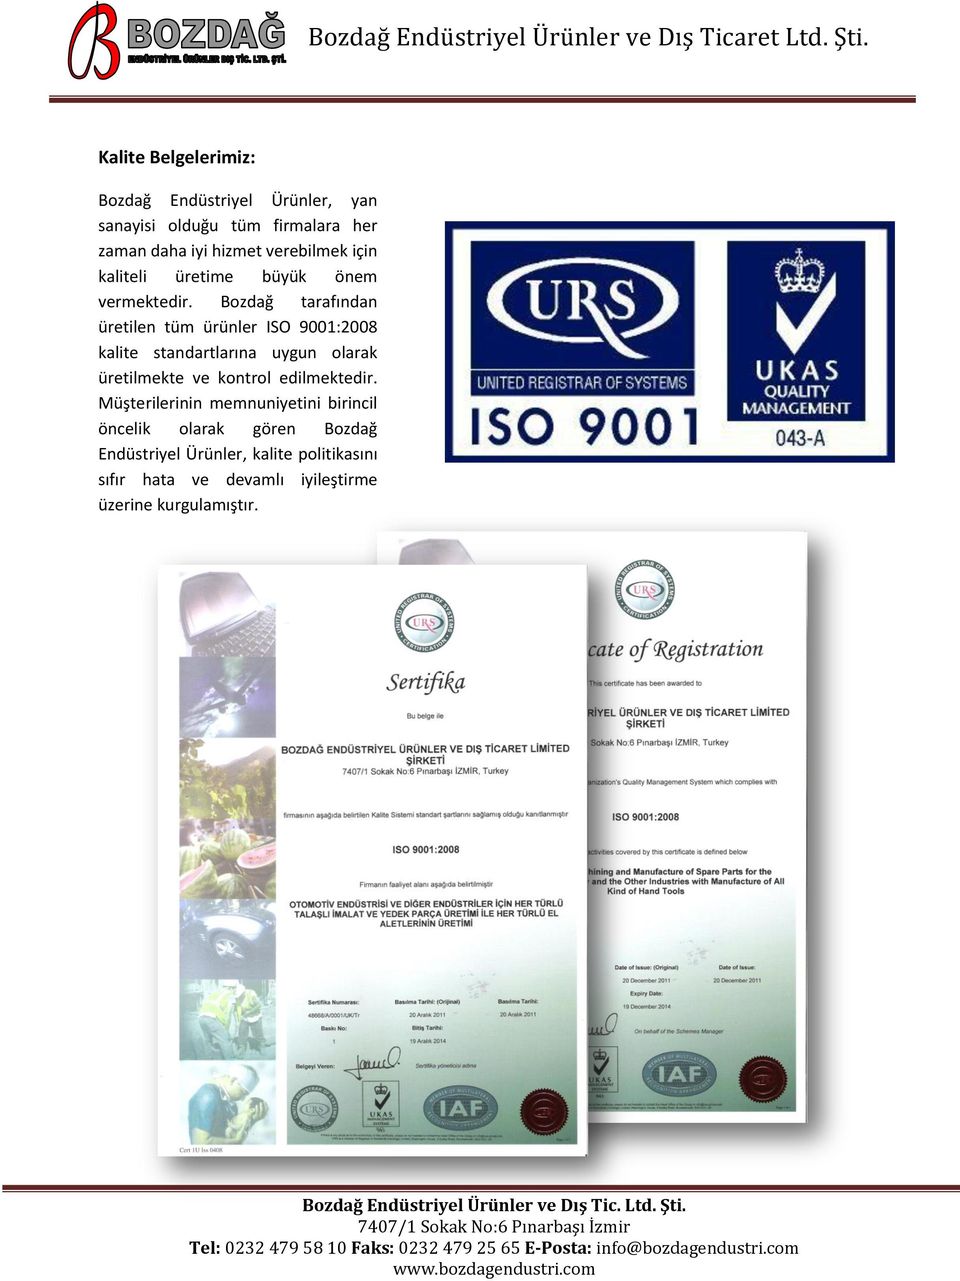 Bozdağ tarafından üretilen tüm ürünler ISO 9001:2008 kalite standartlarına uygun olarak üretilmekte ve kontrol